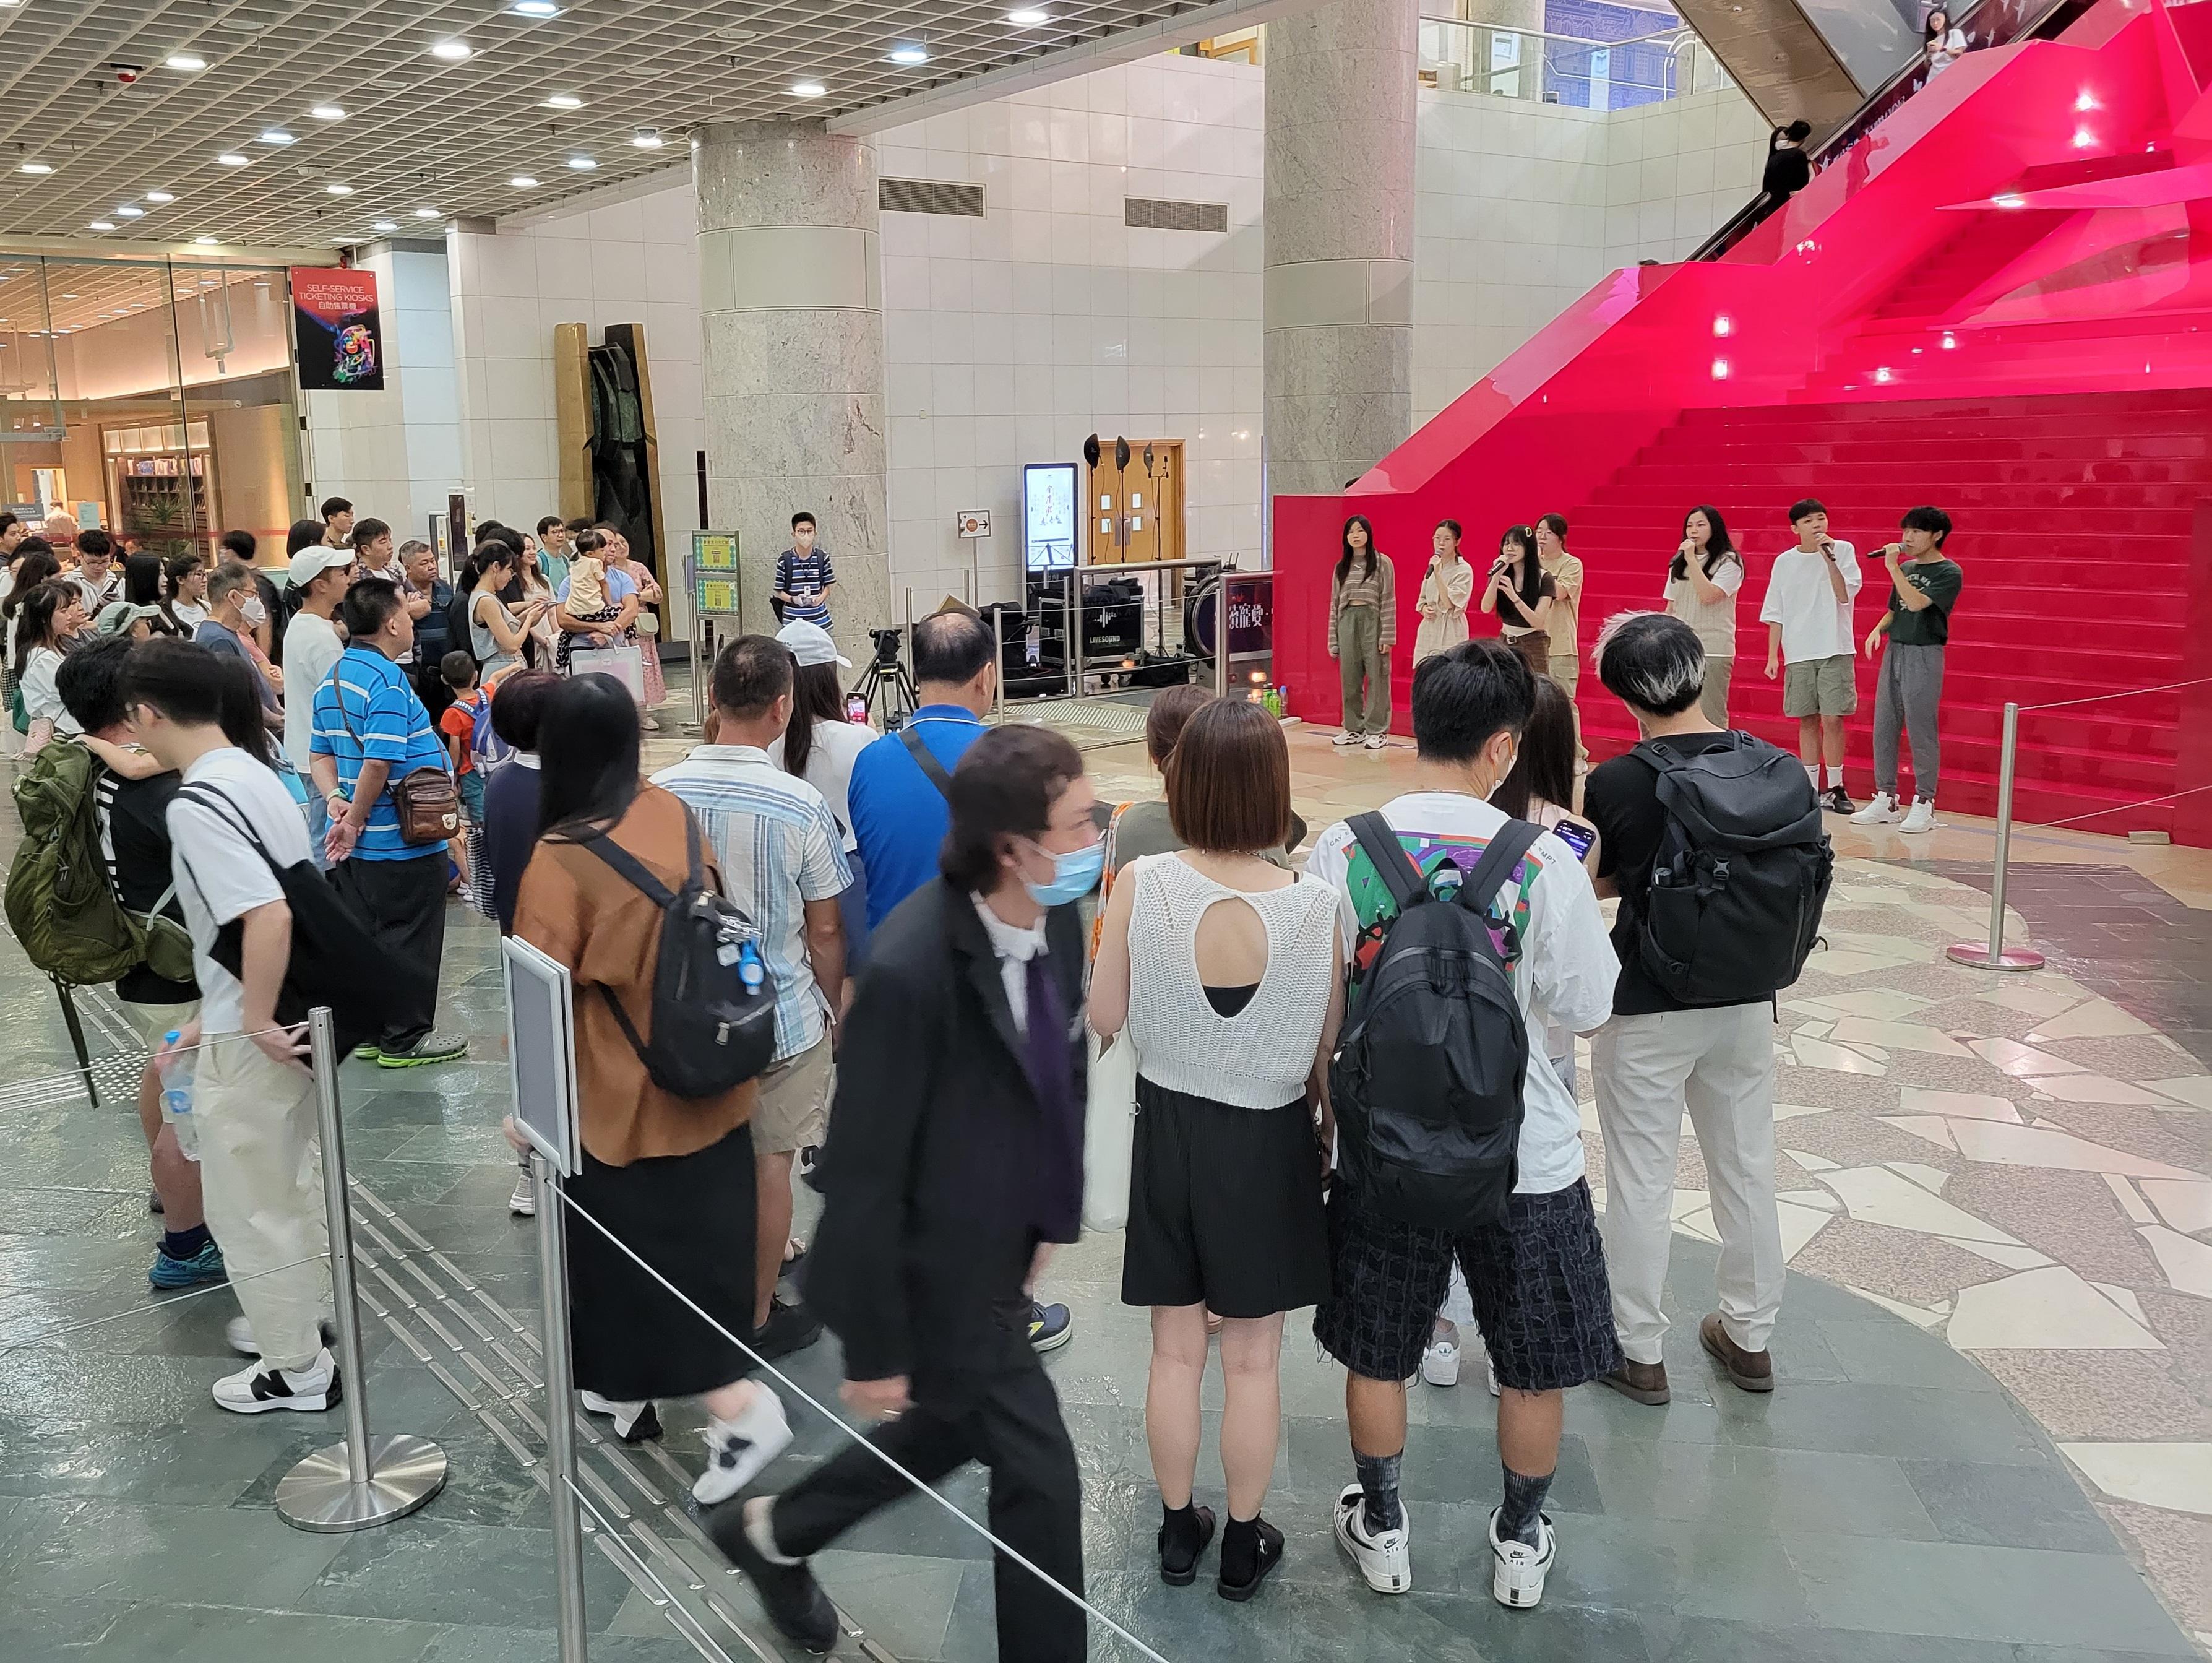 為紀念張國榮六十七歲冥壽，香港文化博物館於九月十二日（星期二）作出特別開放安排，於休館日開放「繼續寵愛・張國榮紀念展」及館內其他展覽，以及為公眾獻上免費電影放映和音樂表演。圖示公眾欣賞九月三日在館內舉行的音樂表演。